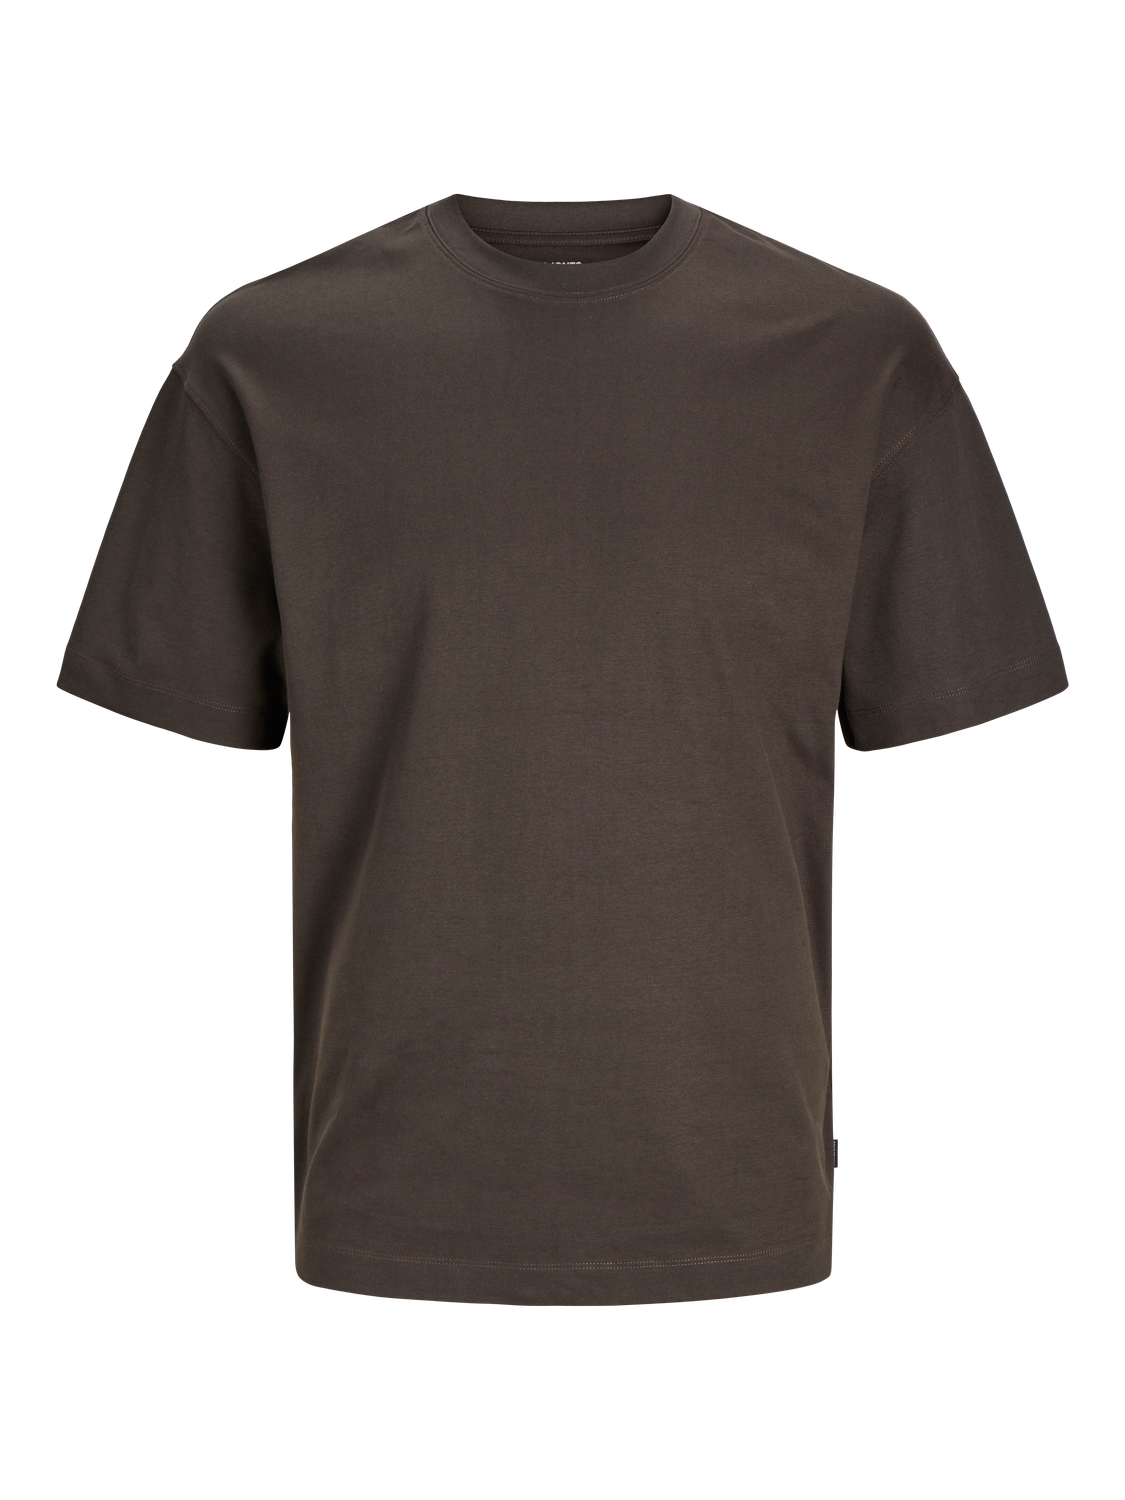 Jack & Jones T-shirt Liso Decote Redondo -Mulch - 12254412